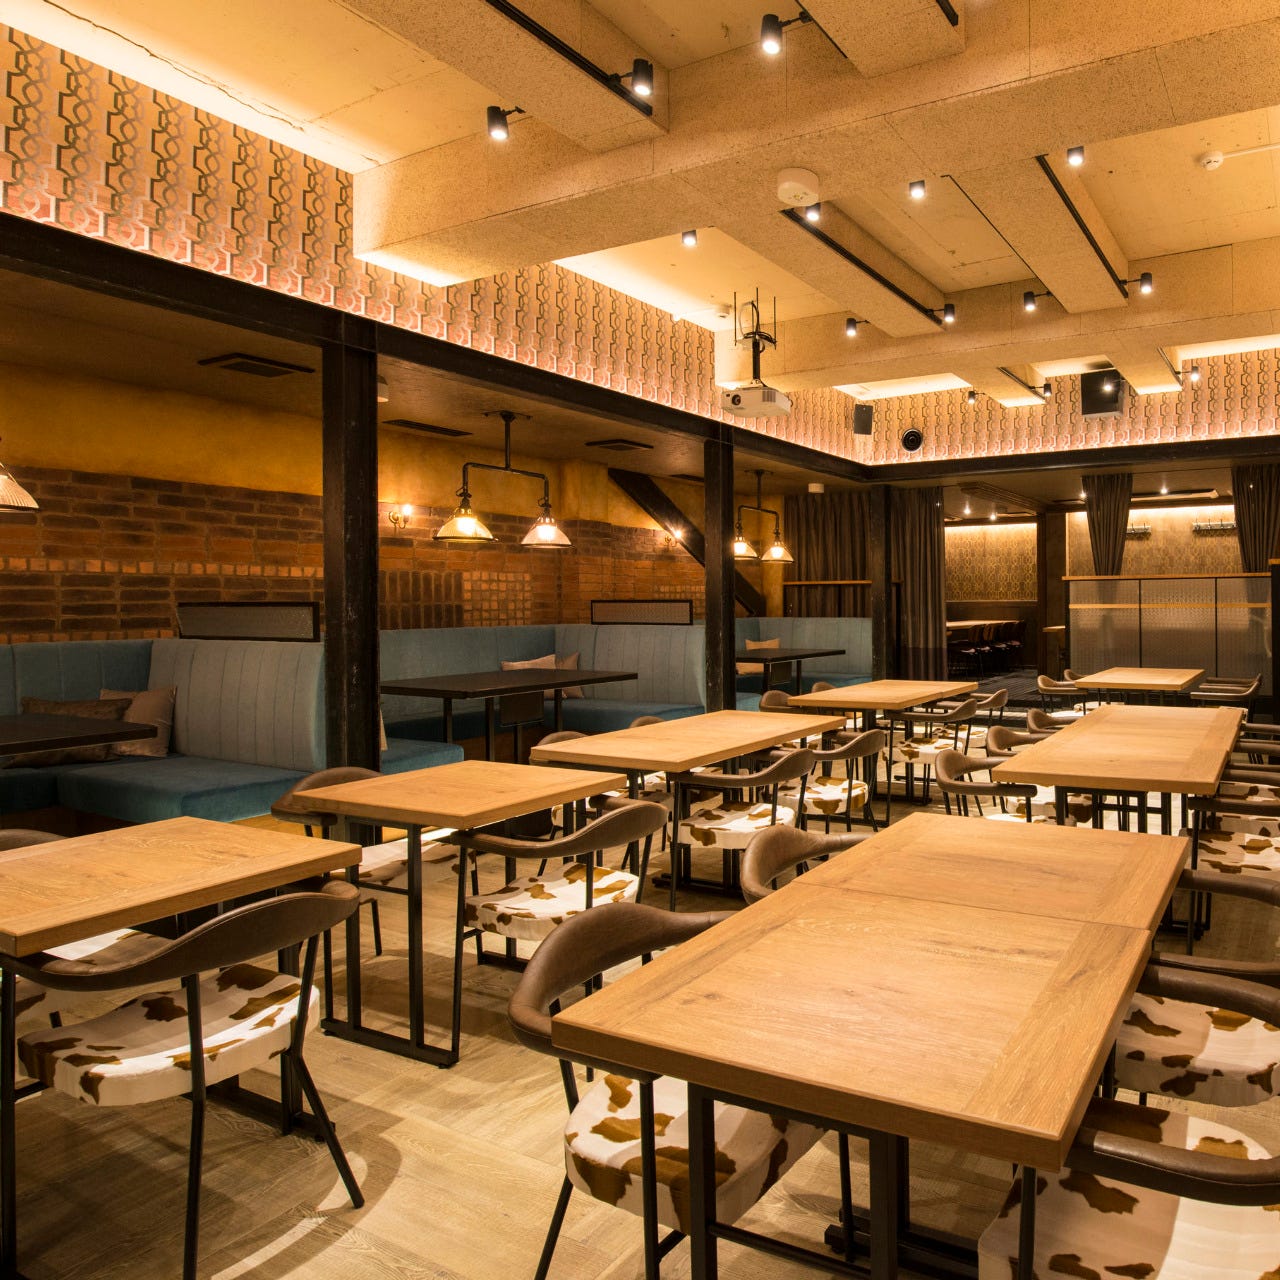 22年 最新グルメ 横浜 東神奈川にあるソファー席があるお店 レストラン カフェ 居酒屋のネット予約 神奈川版